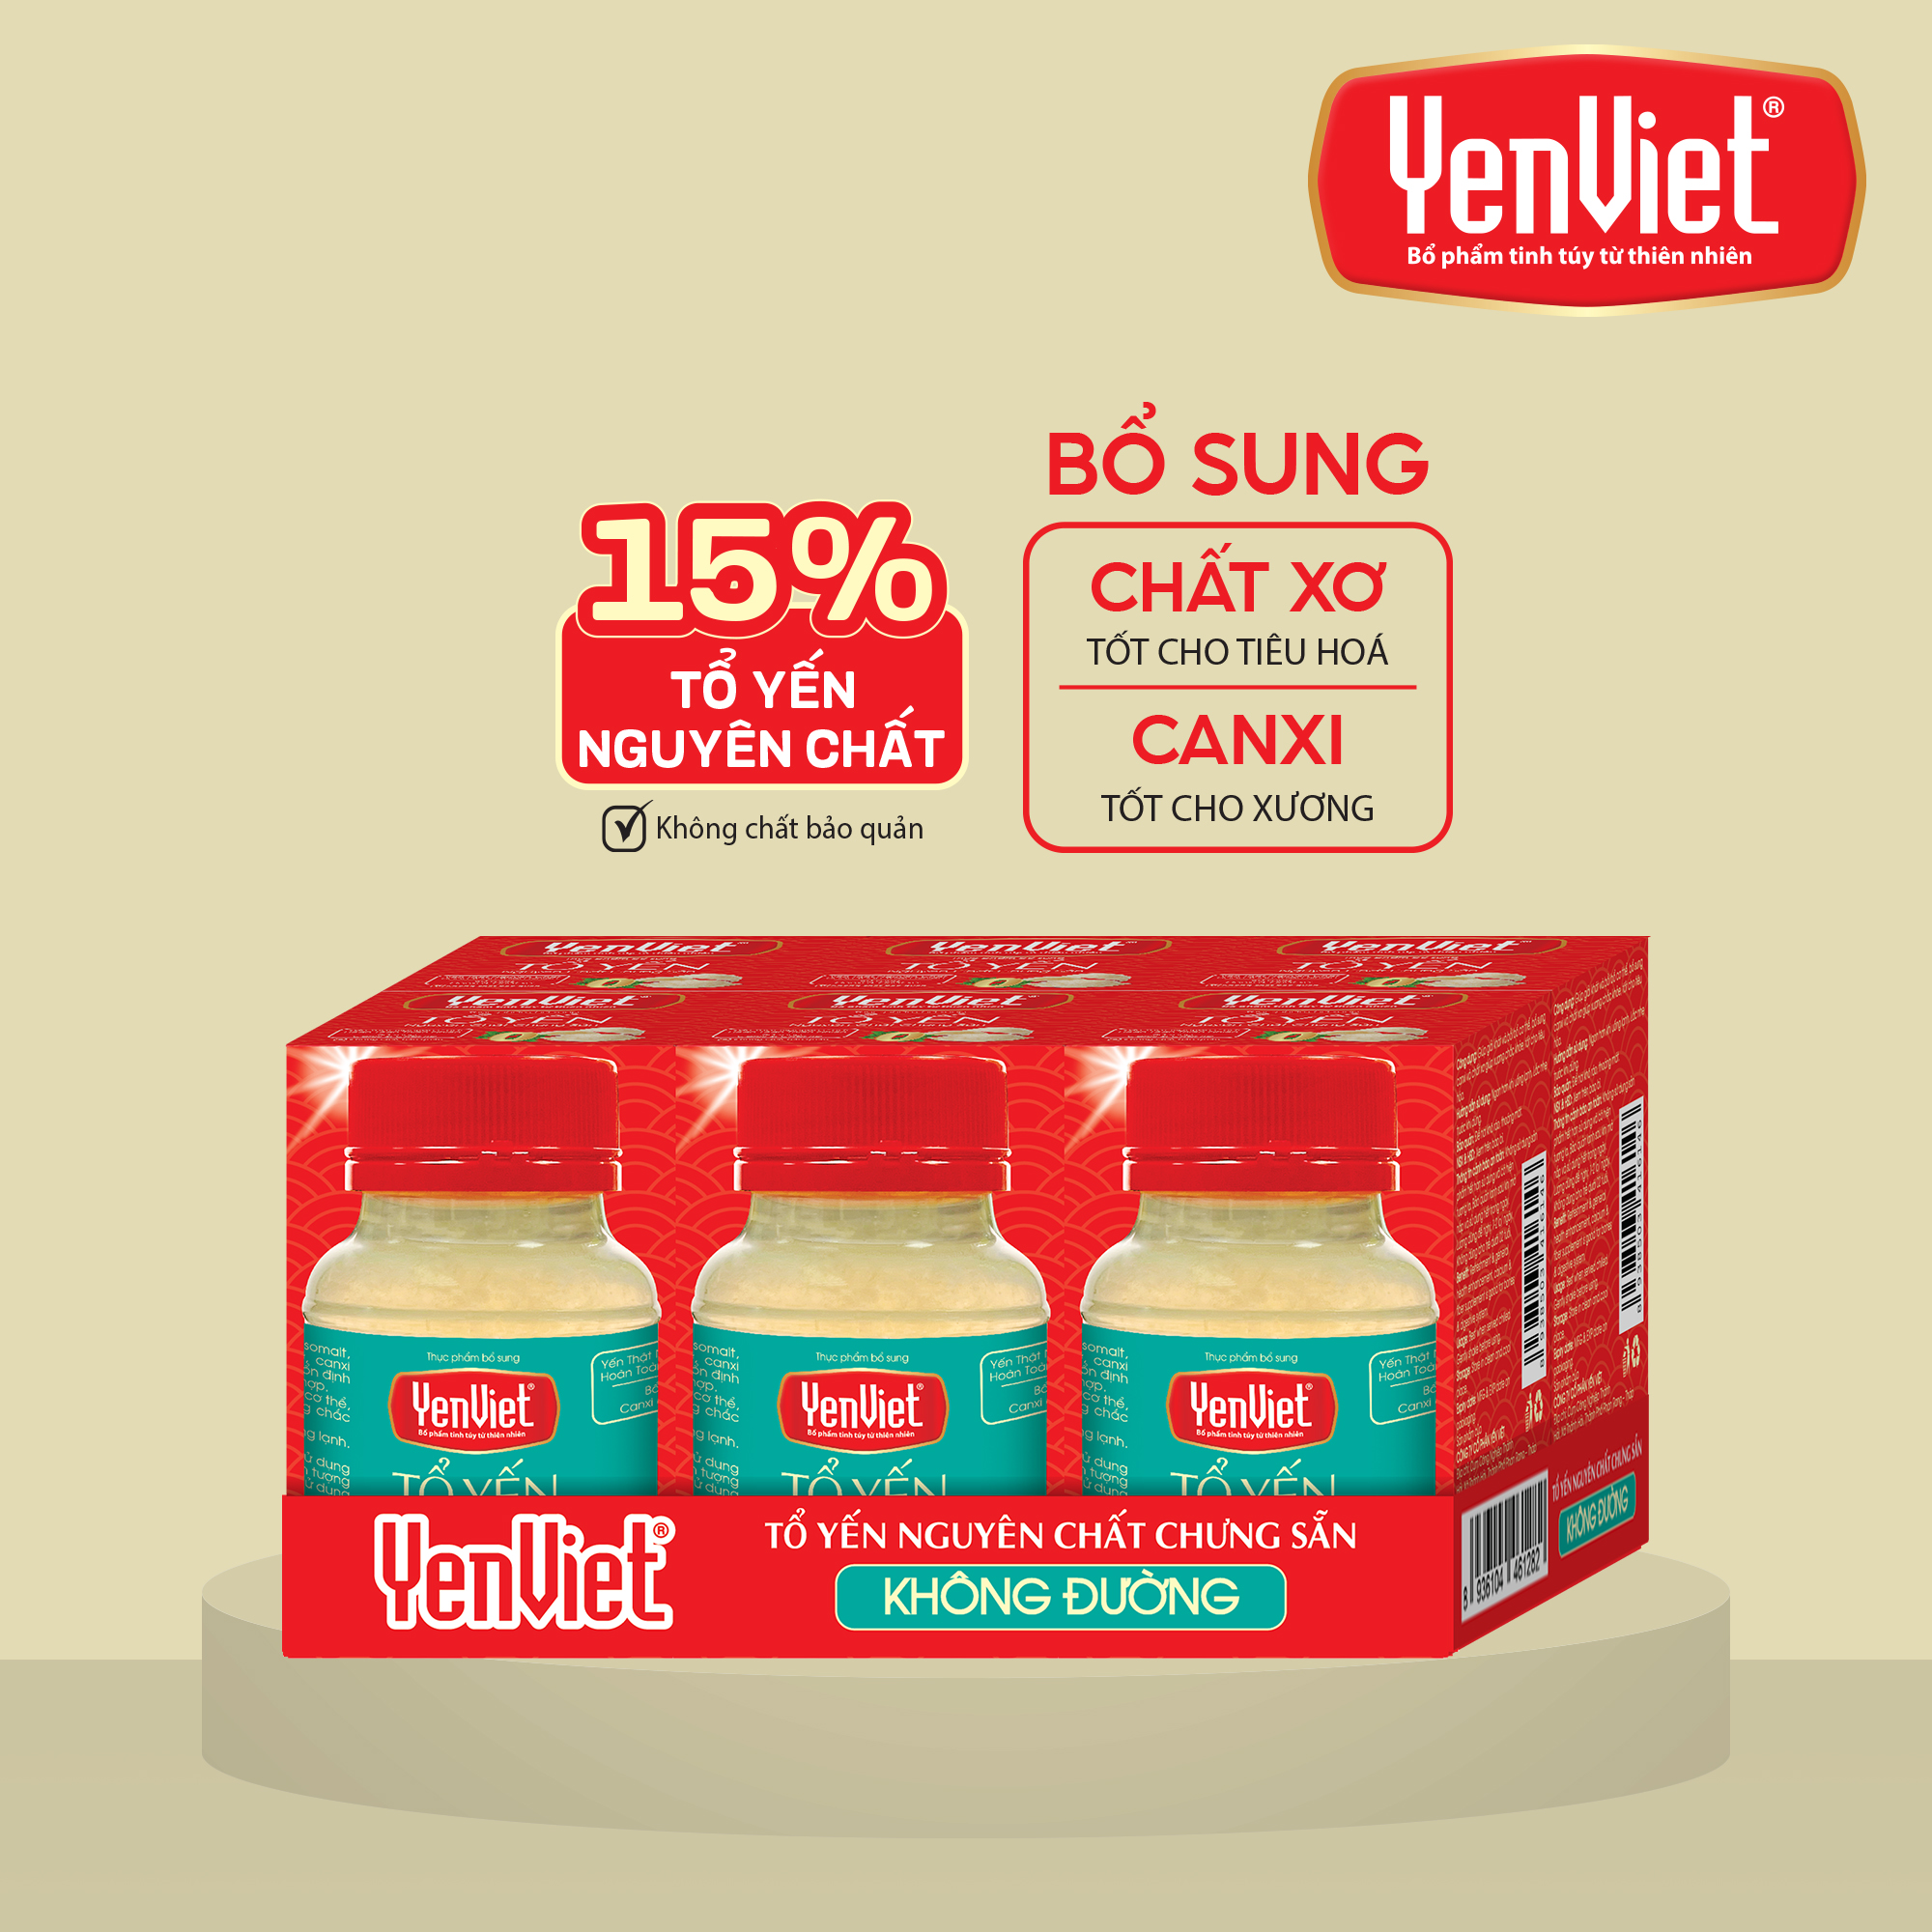 Hình ảnh Yến sào Yến Việt nguyên chất chưng sẵn 15%-18% tổ yến, vị ngọt thanh từ cỏ ngọt, phù hợp cho người ăn kiêng, 6 lọx70ml